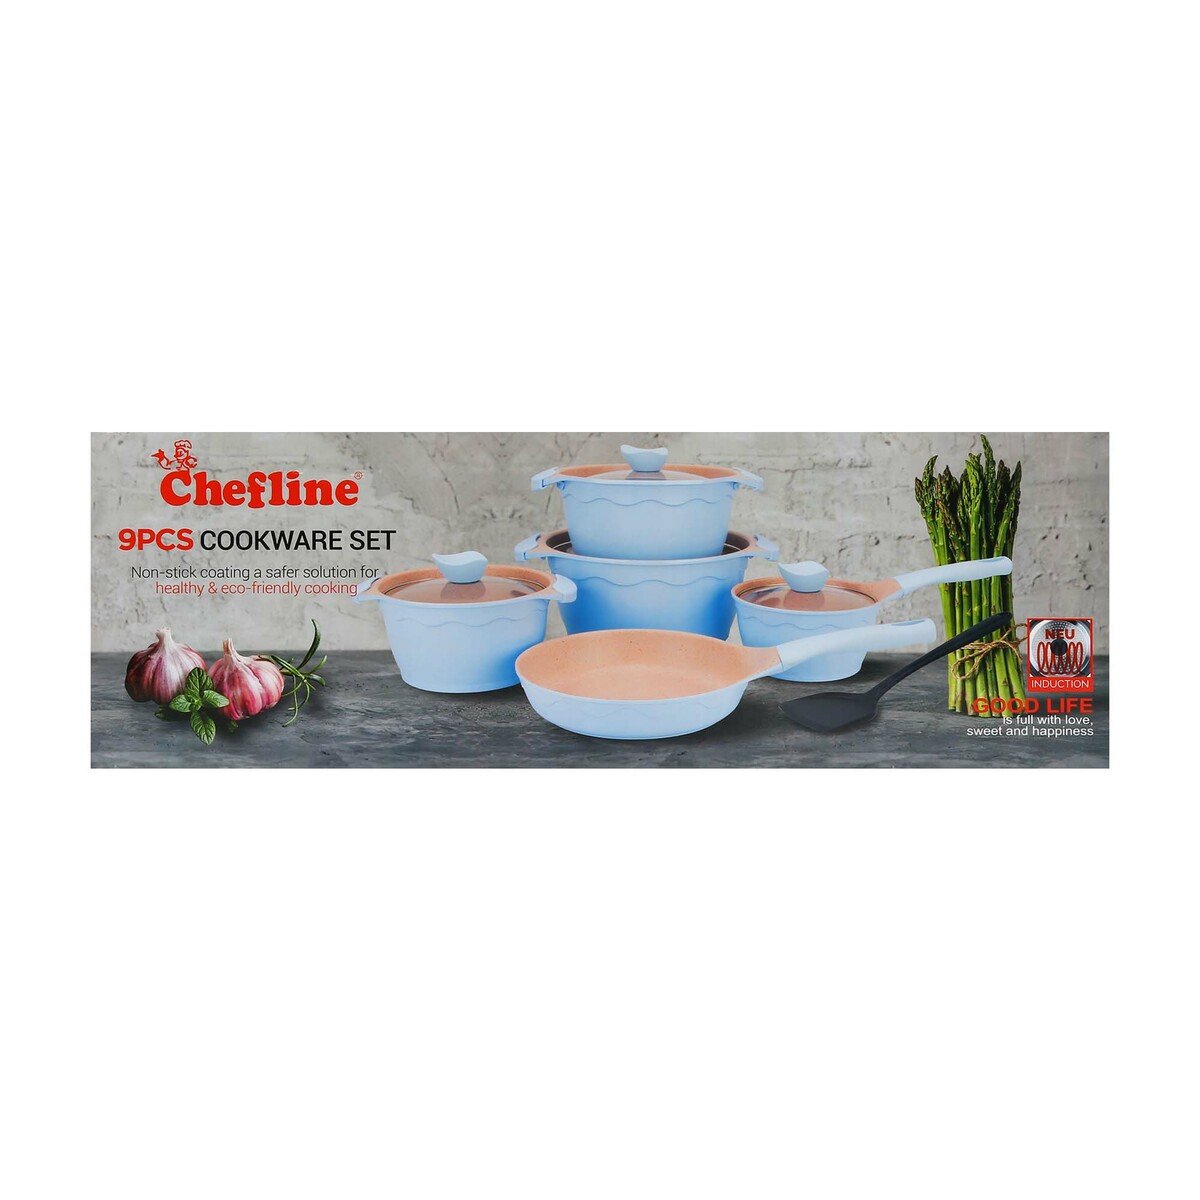 Chefline Die Cast Cookware Set Alfeta 9pcs Induction Assorted Colors